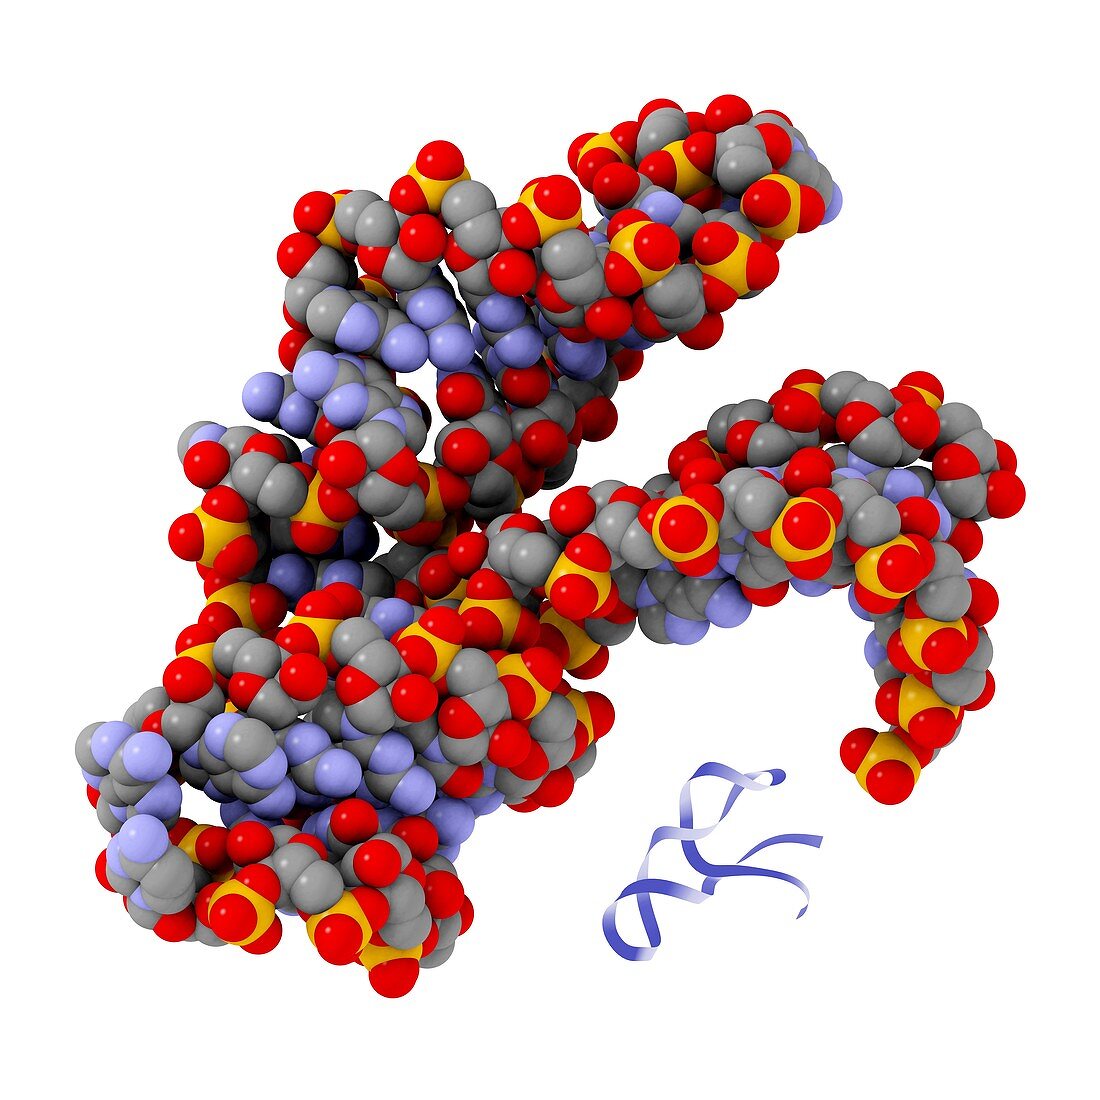 Hammerhead ribozyme molecule